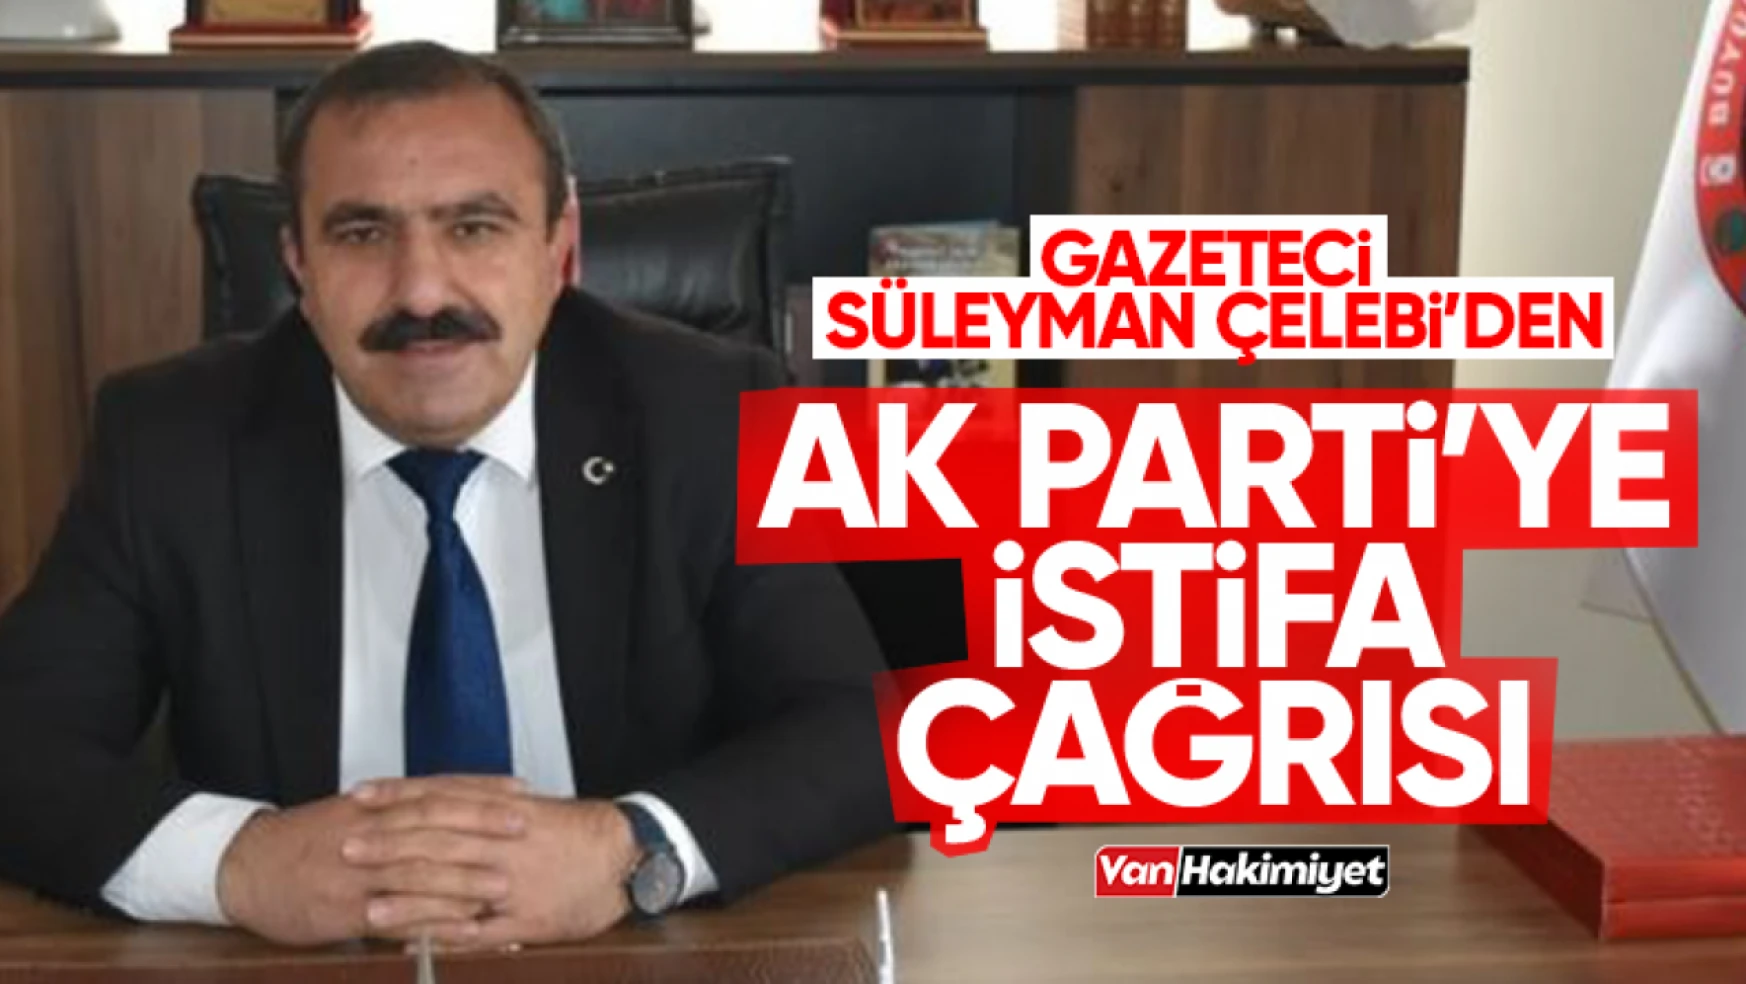 Gazeteci Süleyman Çelebi'den AK Parti'ye istifa çağrısı!